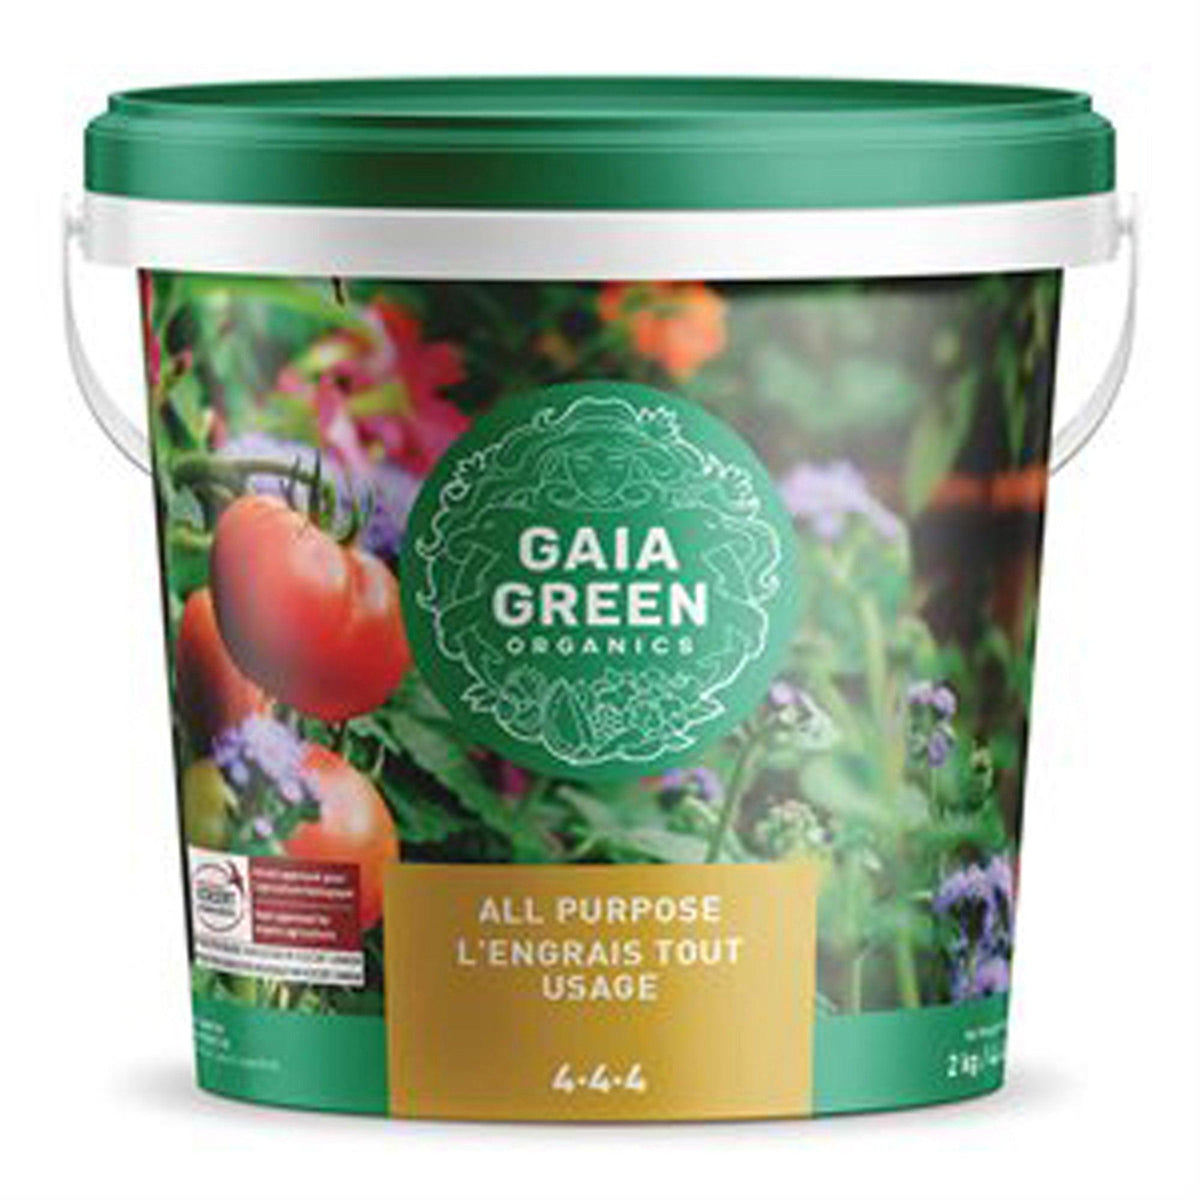 Gaia Green All Purpose Organic 4-4-4 Fertilizer 2Kg